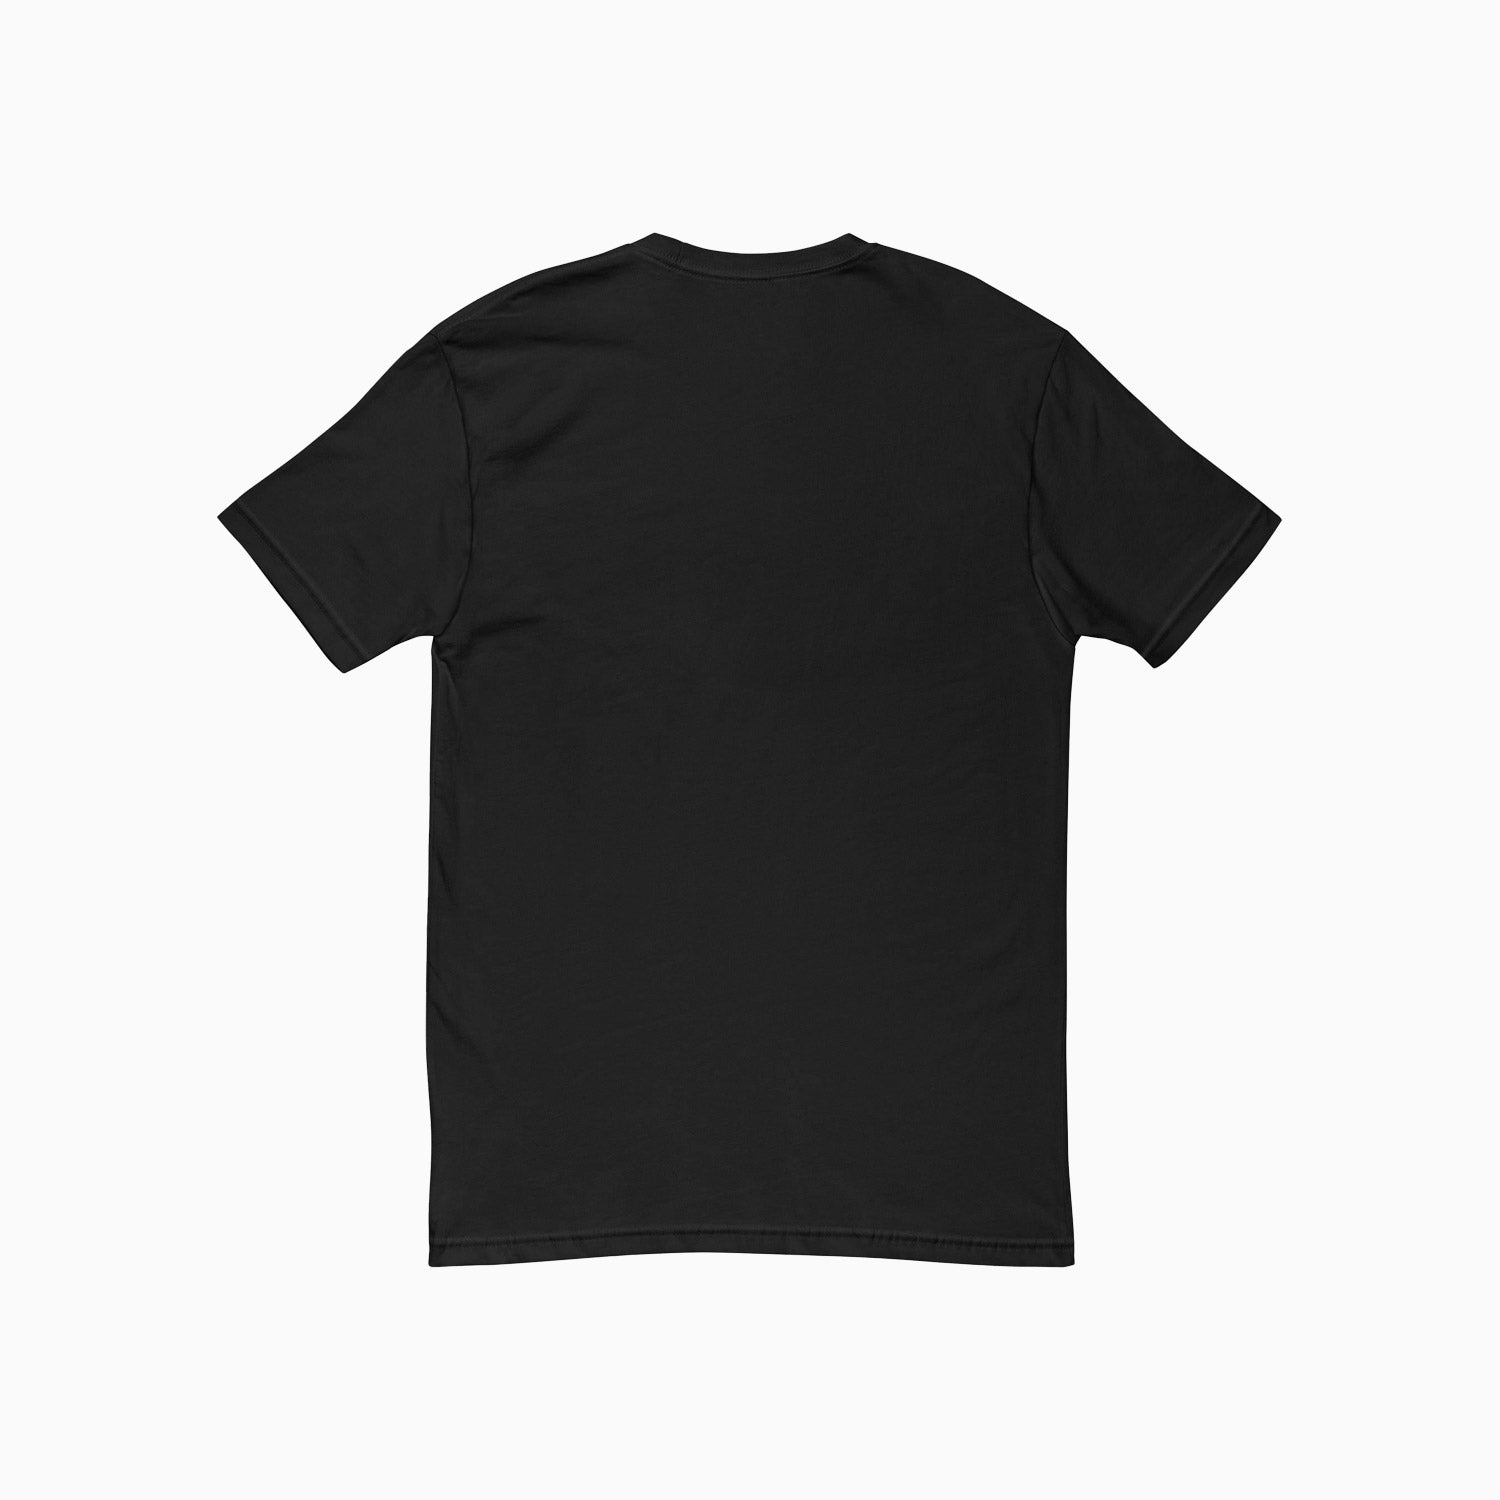 savar-mens-grid-printed-black-t-shirt-st205-010